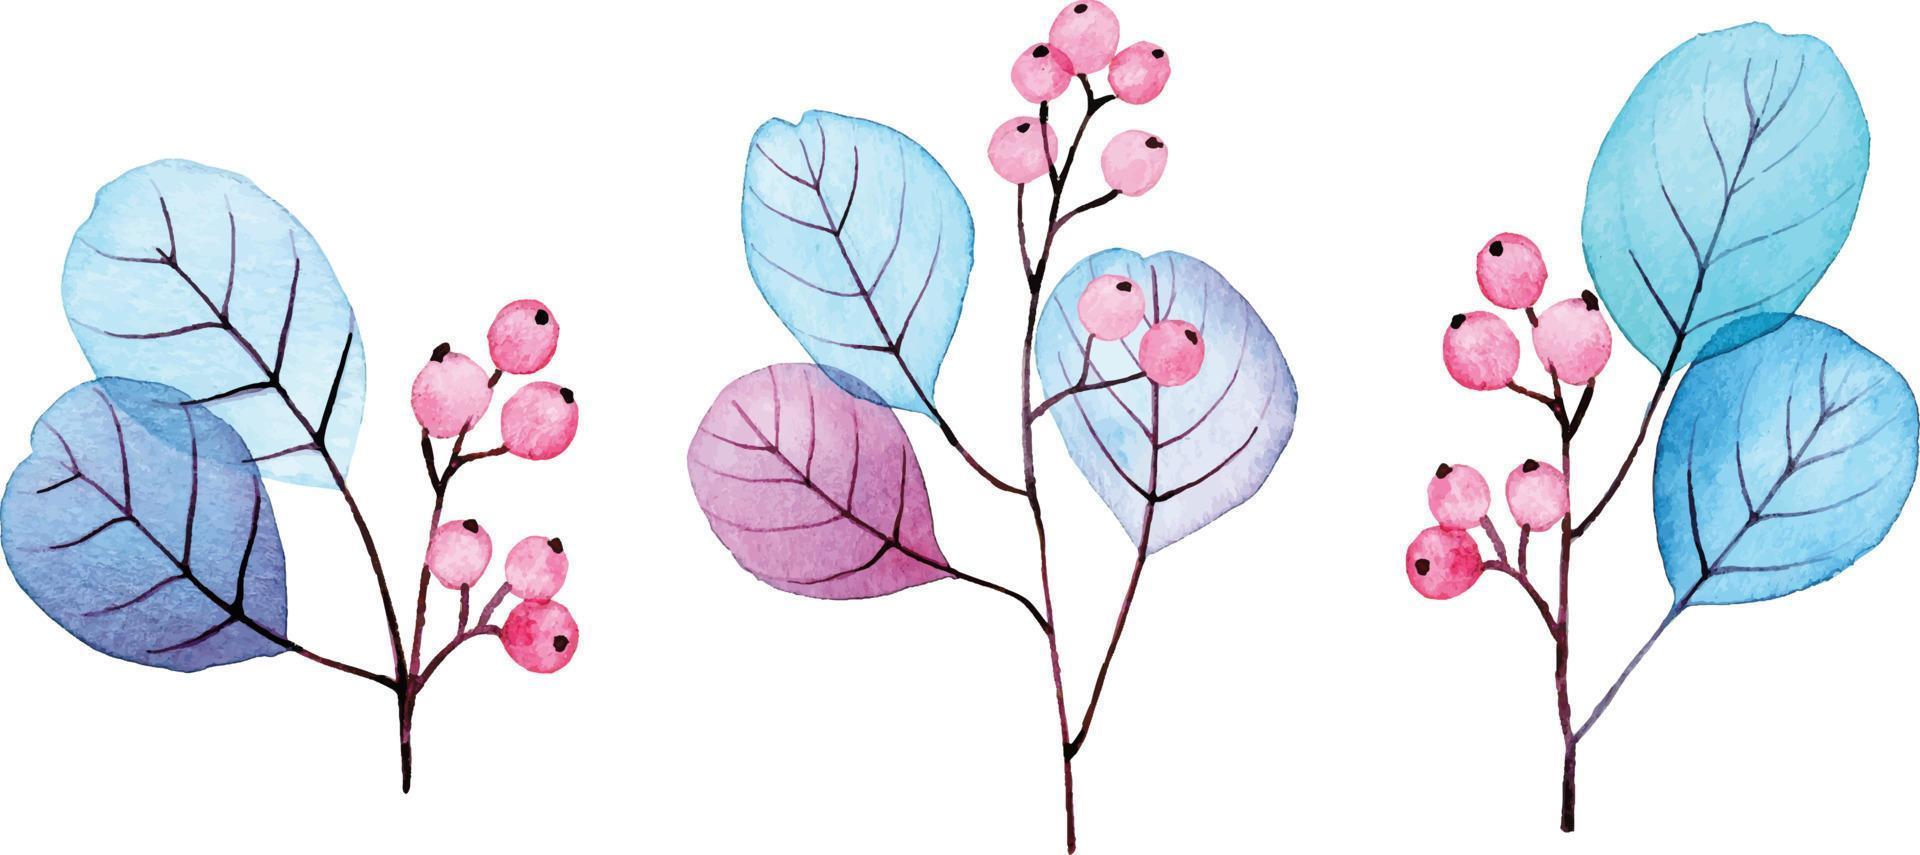 aquarel tekening. set transparante eucalyptusbladeren en blauwe en roze bessen. abstracte bladeren en takken. collectie voor huwelijksdecoratie, wenskaart vector